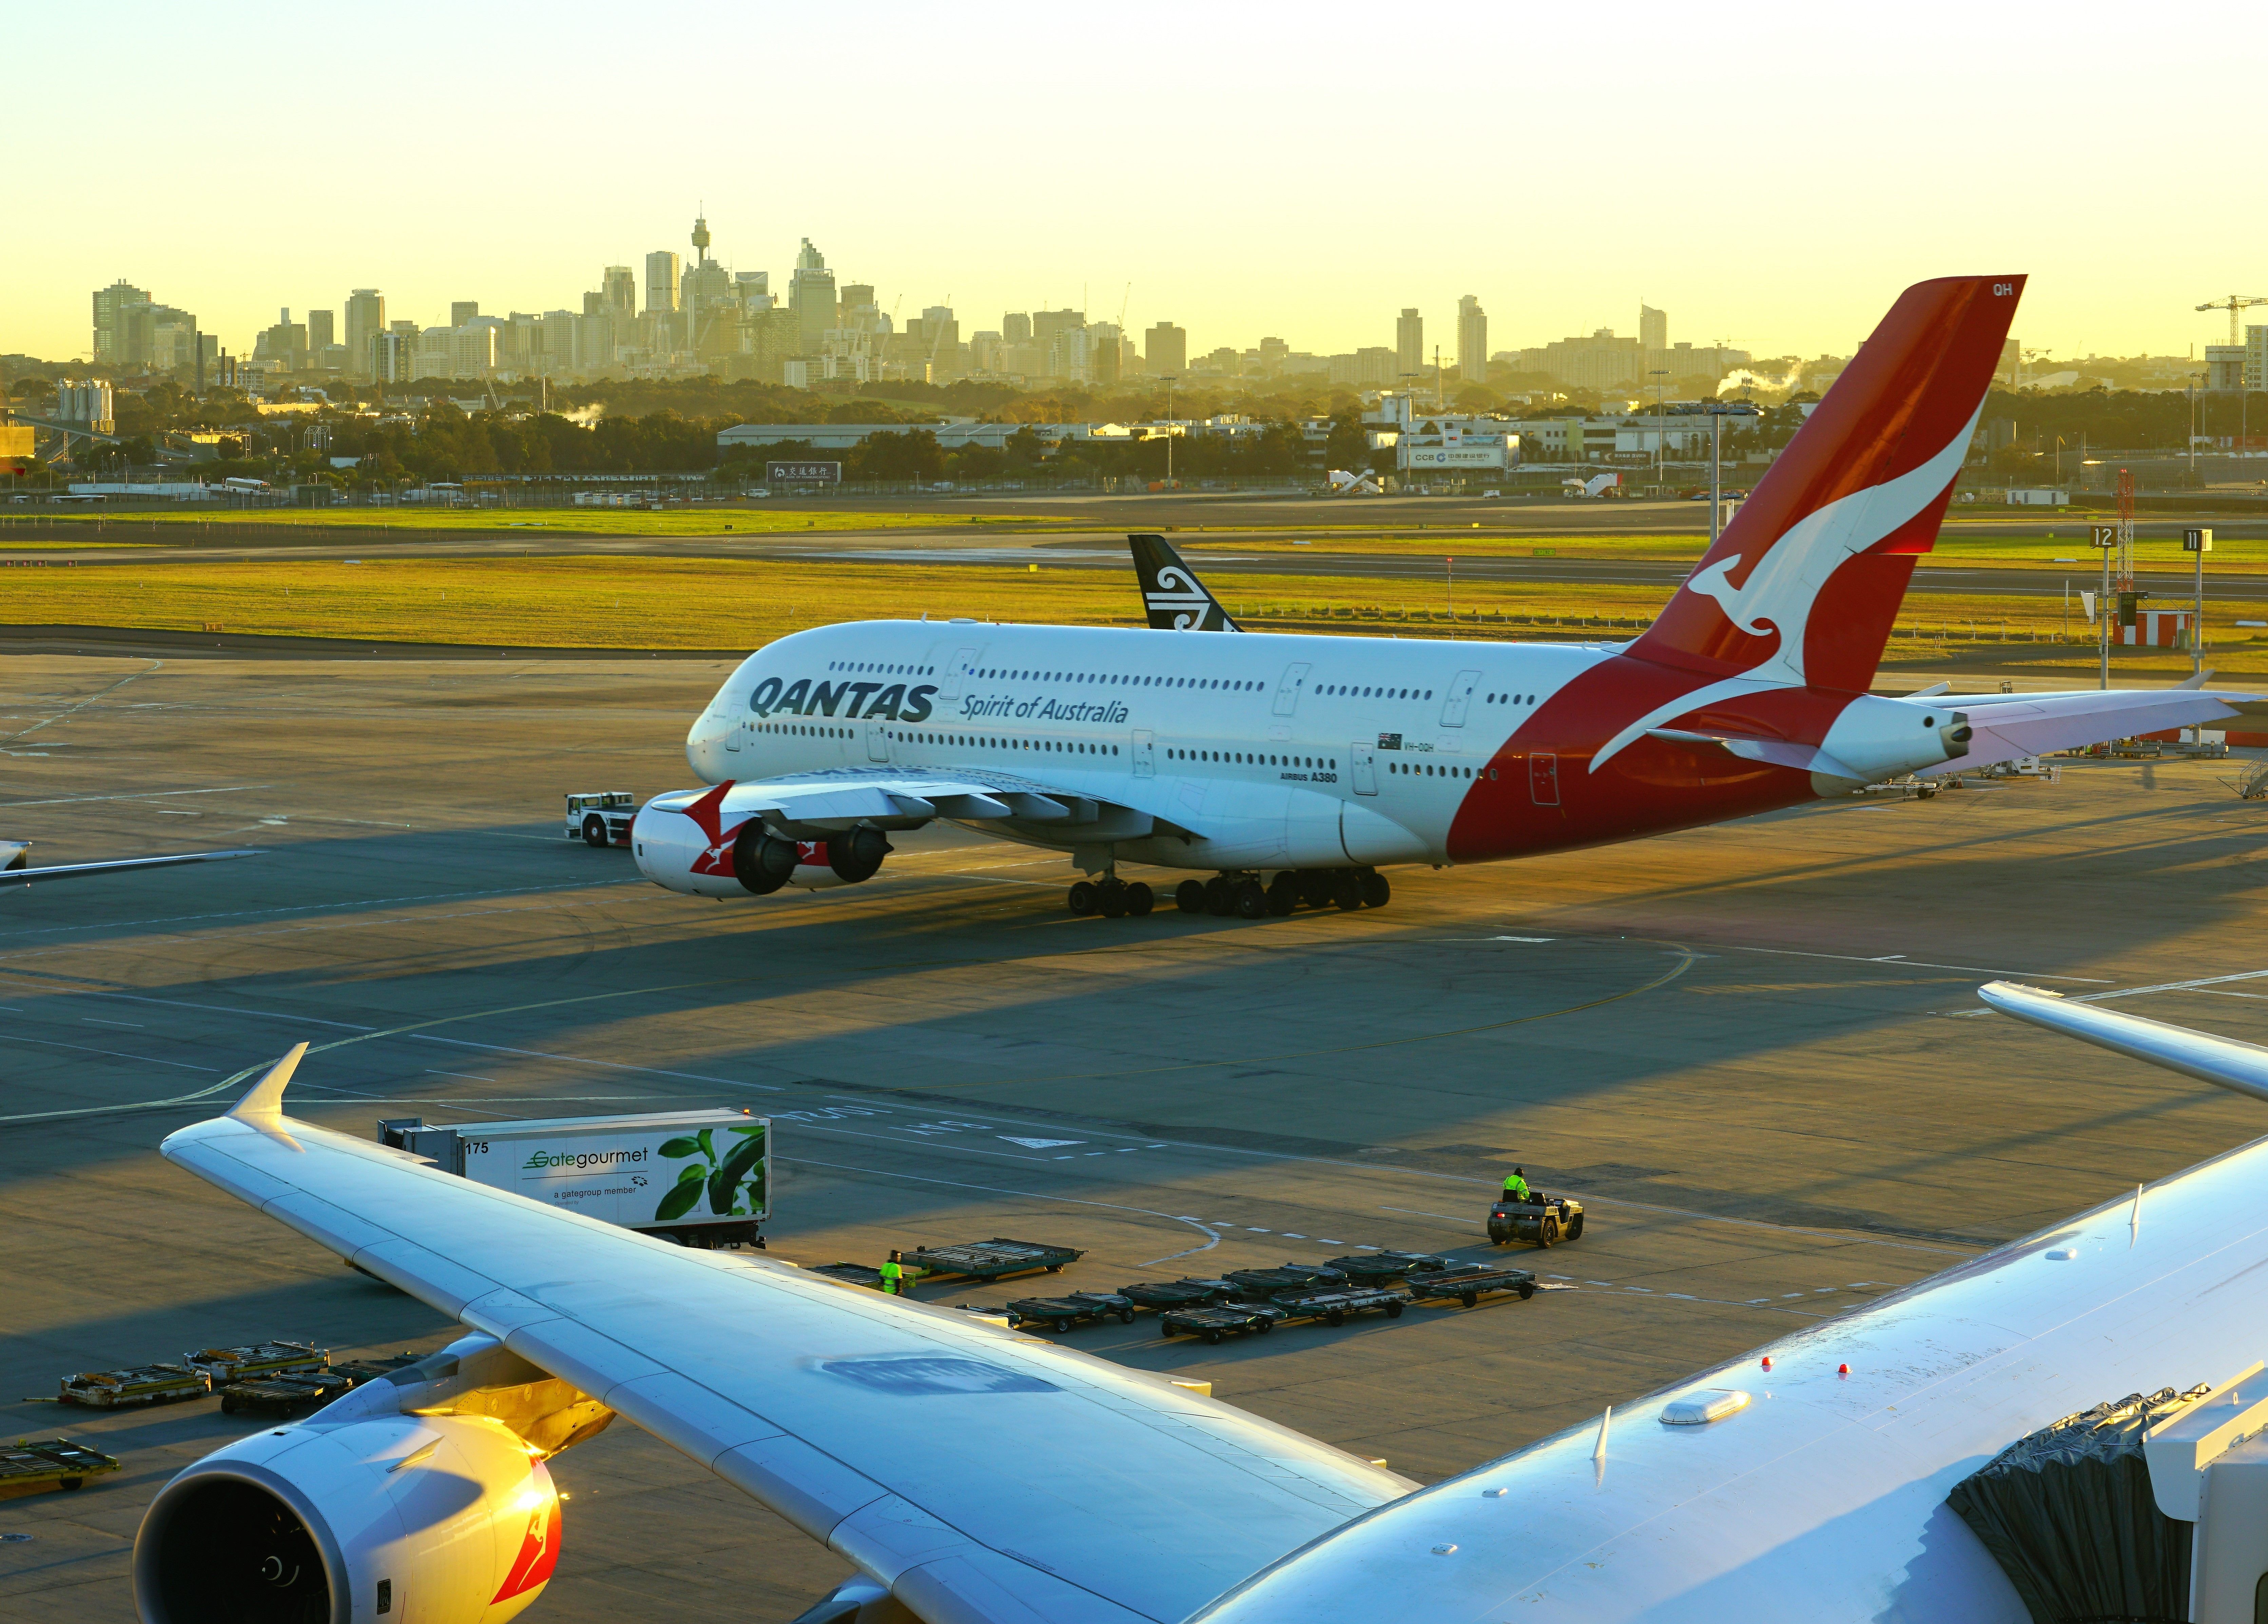 Qantas Airbus A380 taxiing at Sydney Airport